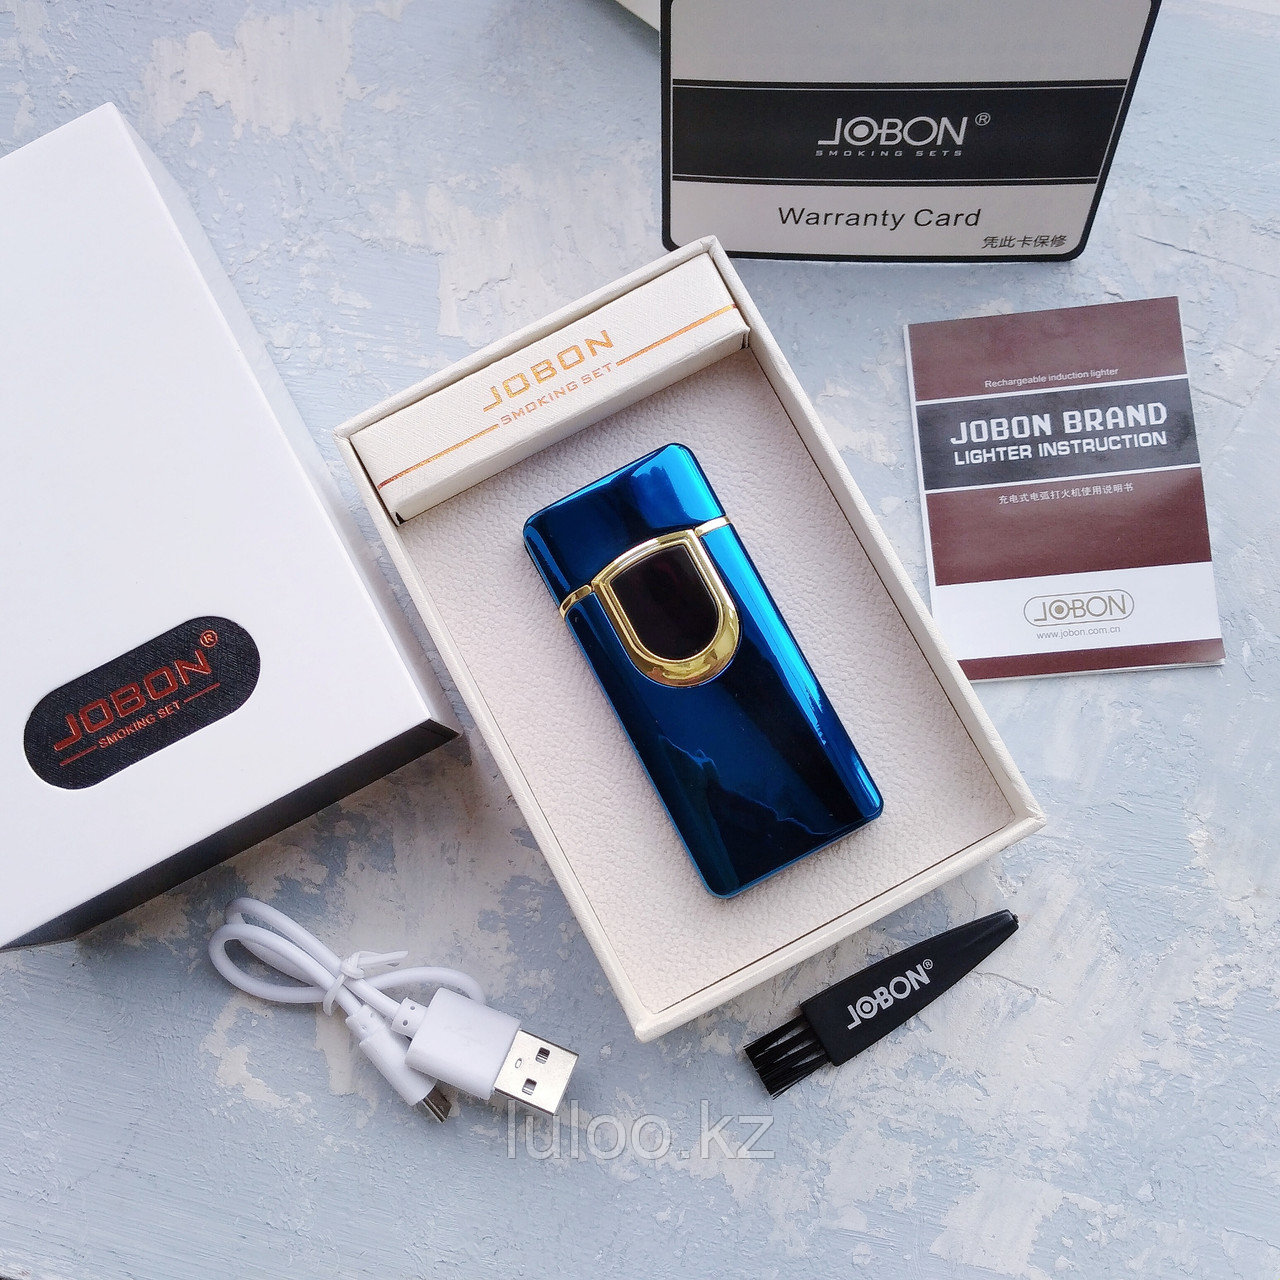 Вращающаяся электронная USB-зажигалка в подарочной коробке, синяя.